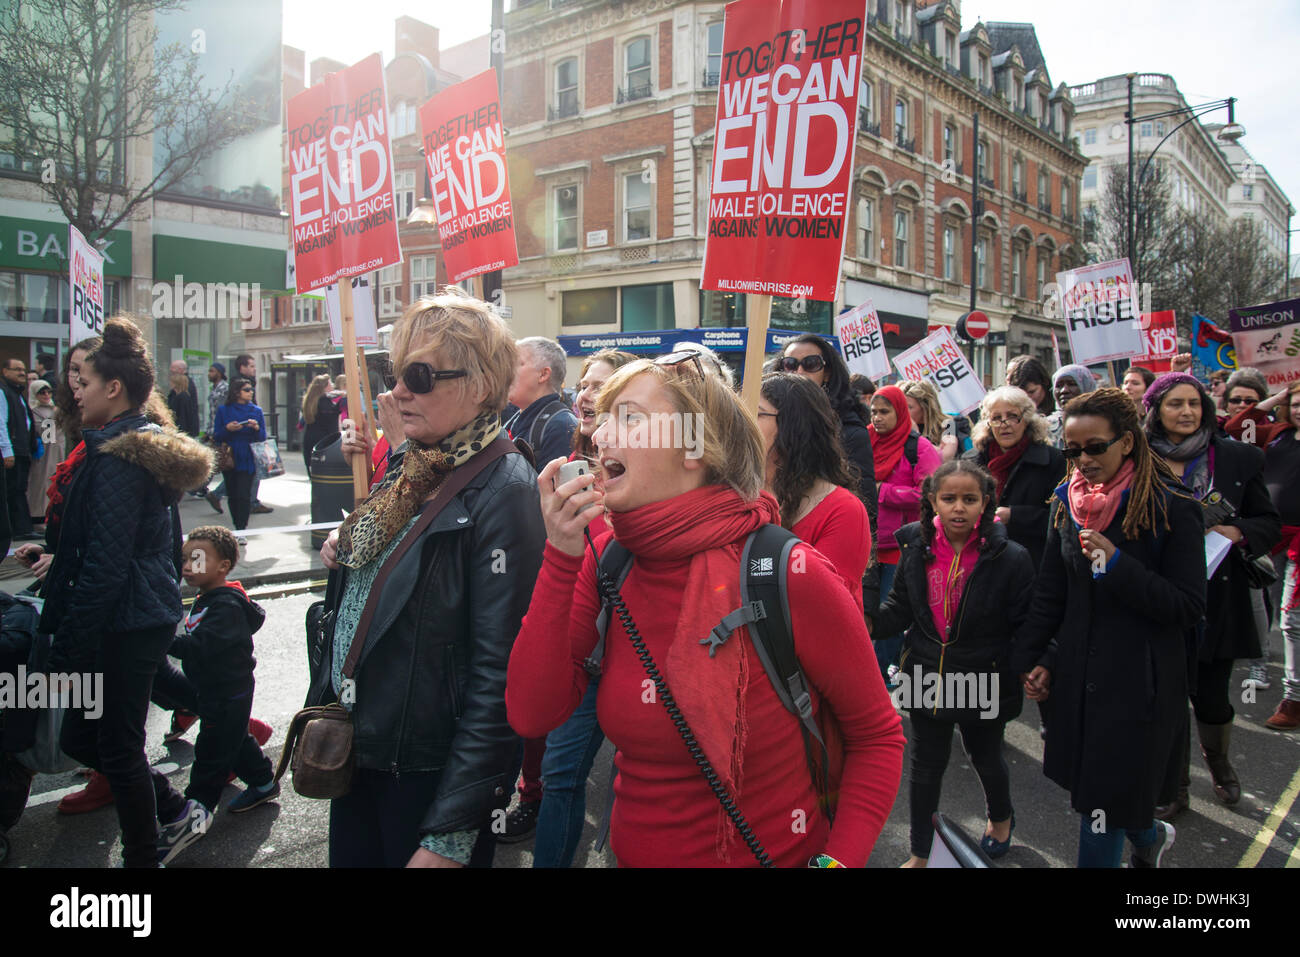 Londres, Royaume-Uni. 8 mars, 2014. Journée internationale des femmes mars 2014, Londres, Royaume-Uni : Crédit Bjanka Kadic/Alamy Live News Banque D'Images